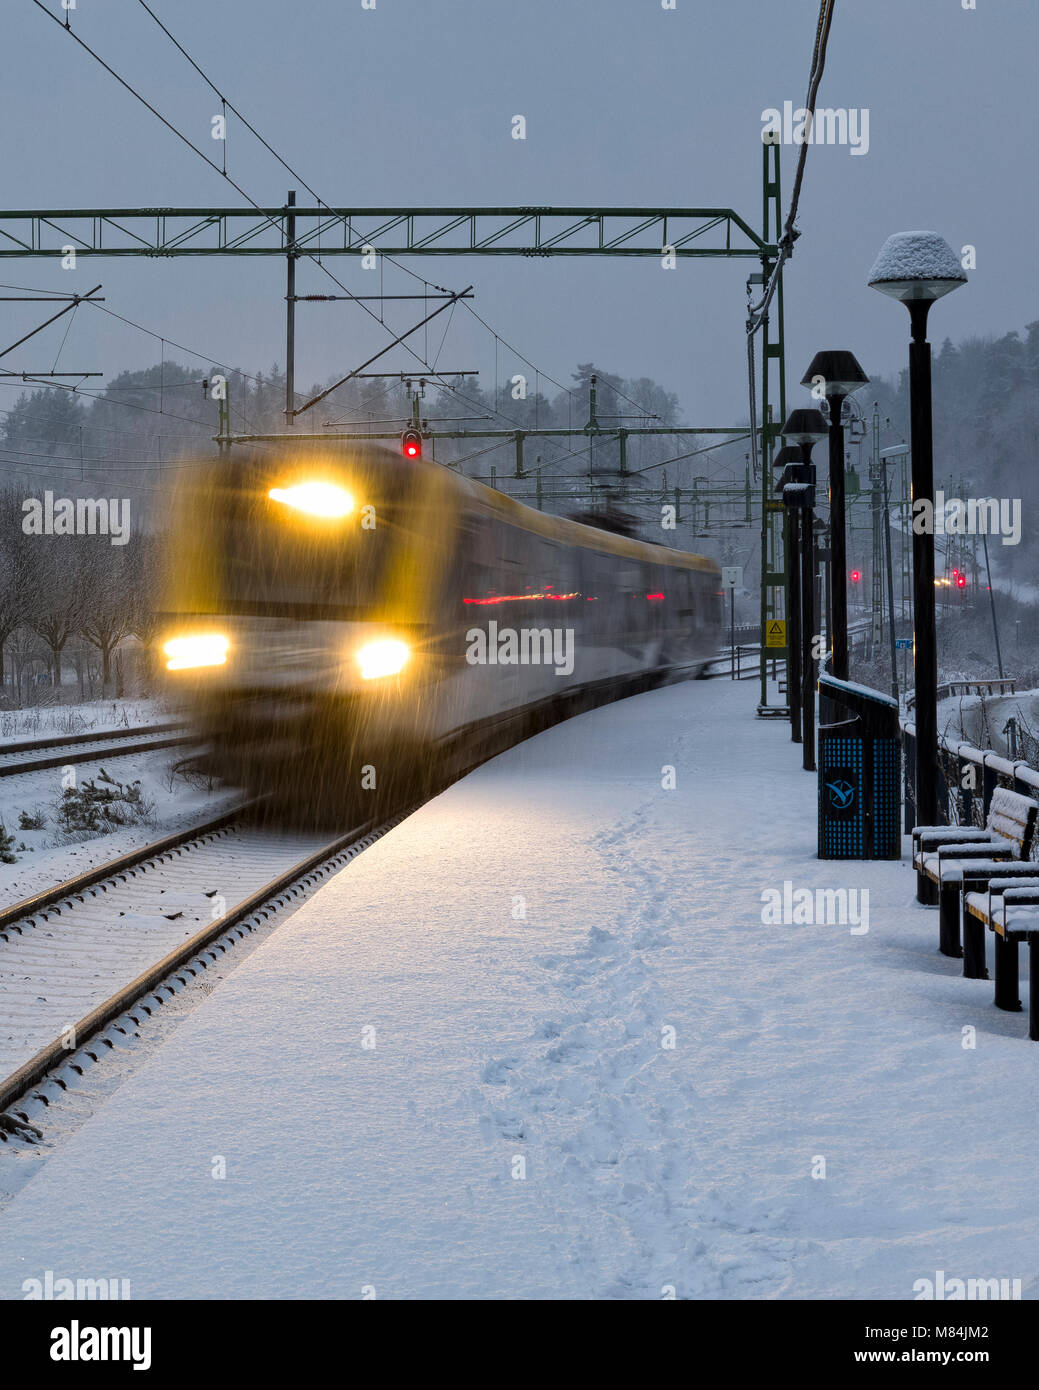 FLODA, Svezia - 16 febbraio: Moderna commuter rail treno passeggeri o ferrovia suburbana nella neve durante l'inverno stazione ferroviaria modello di rilascio: No. Proprietà di rilascio: No. Foto Stock